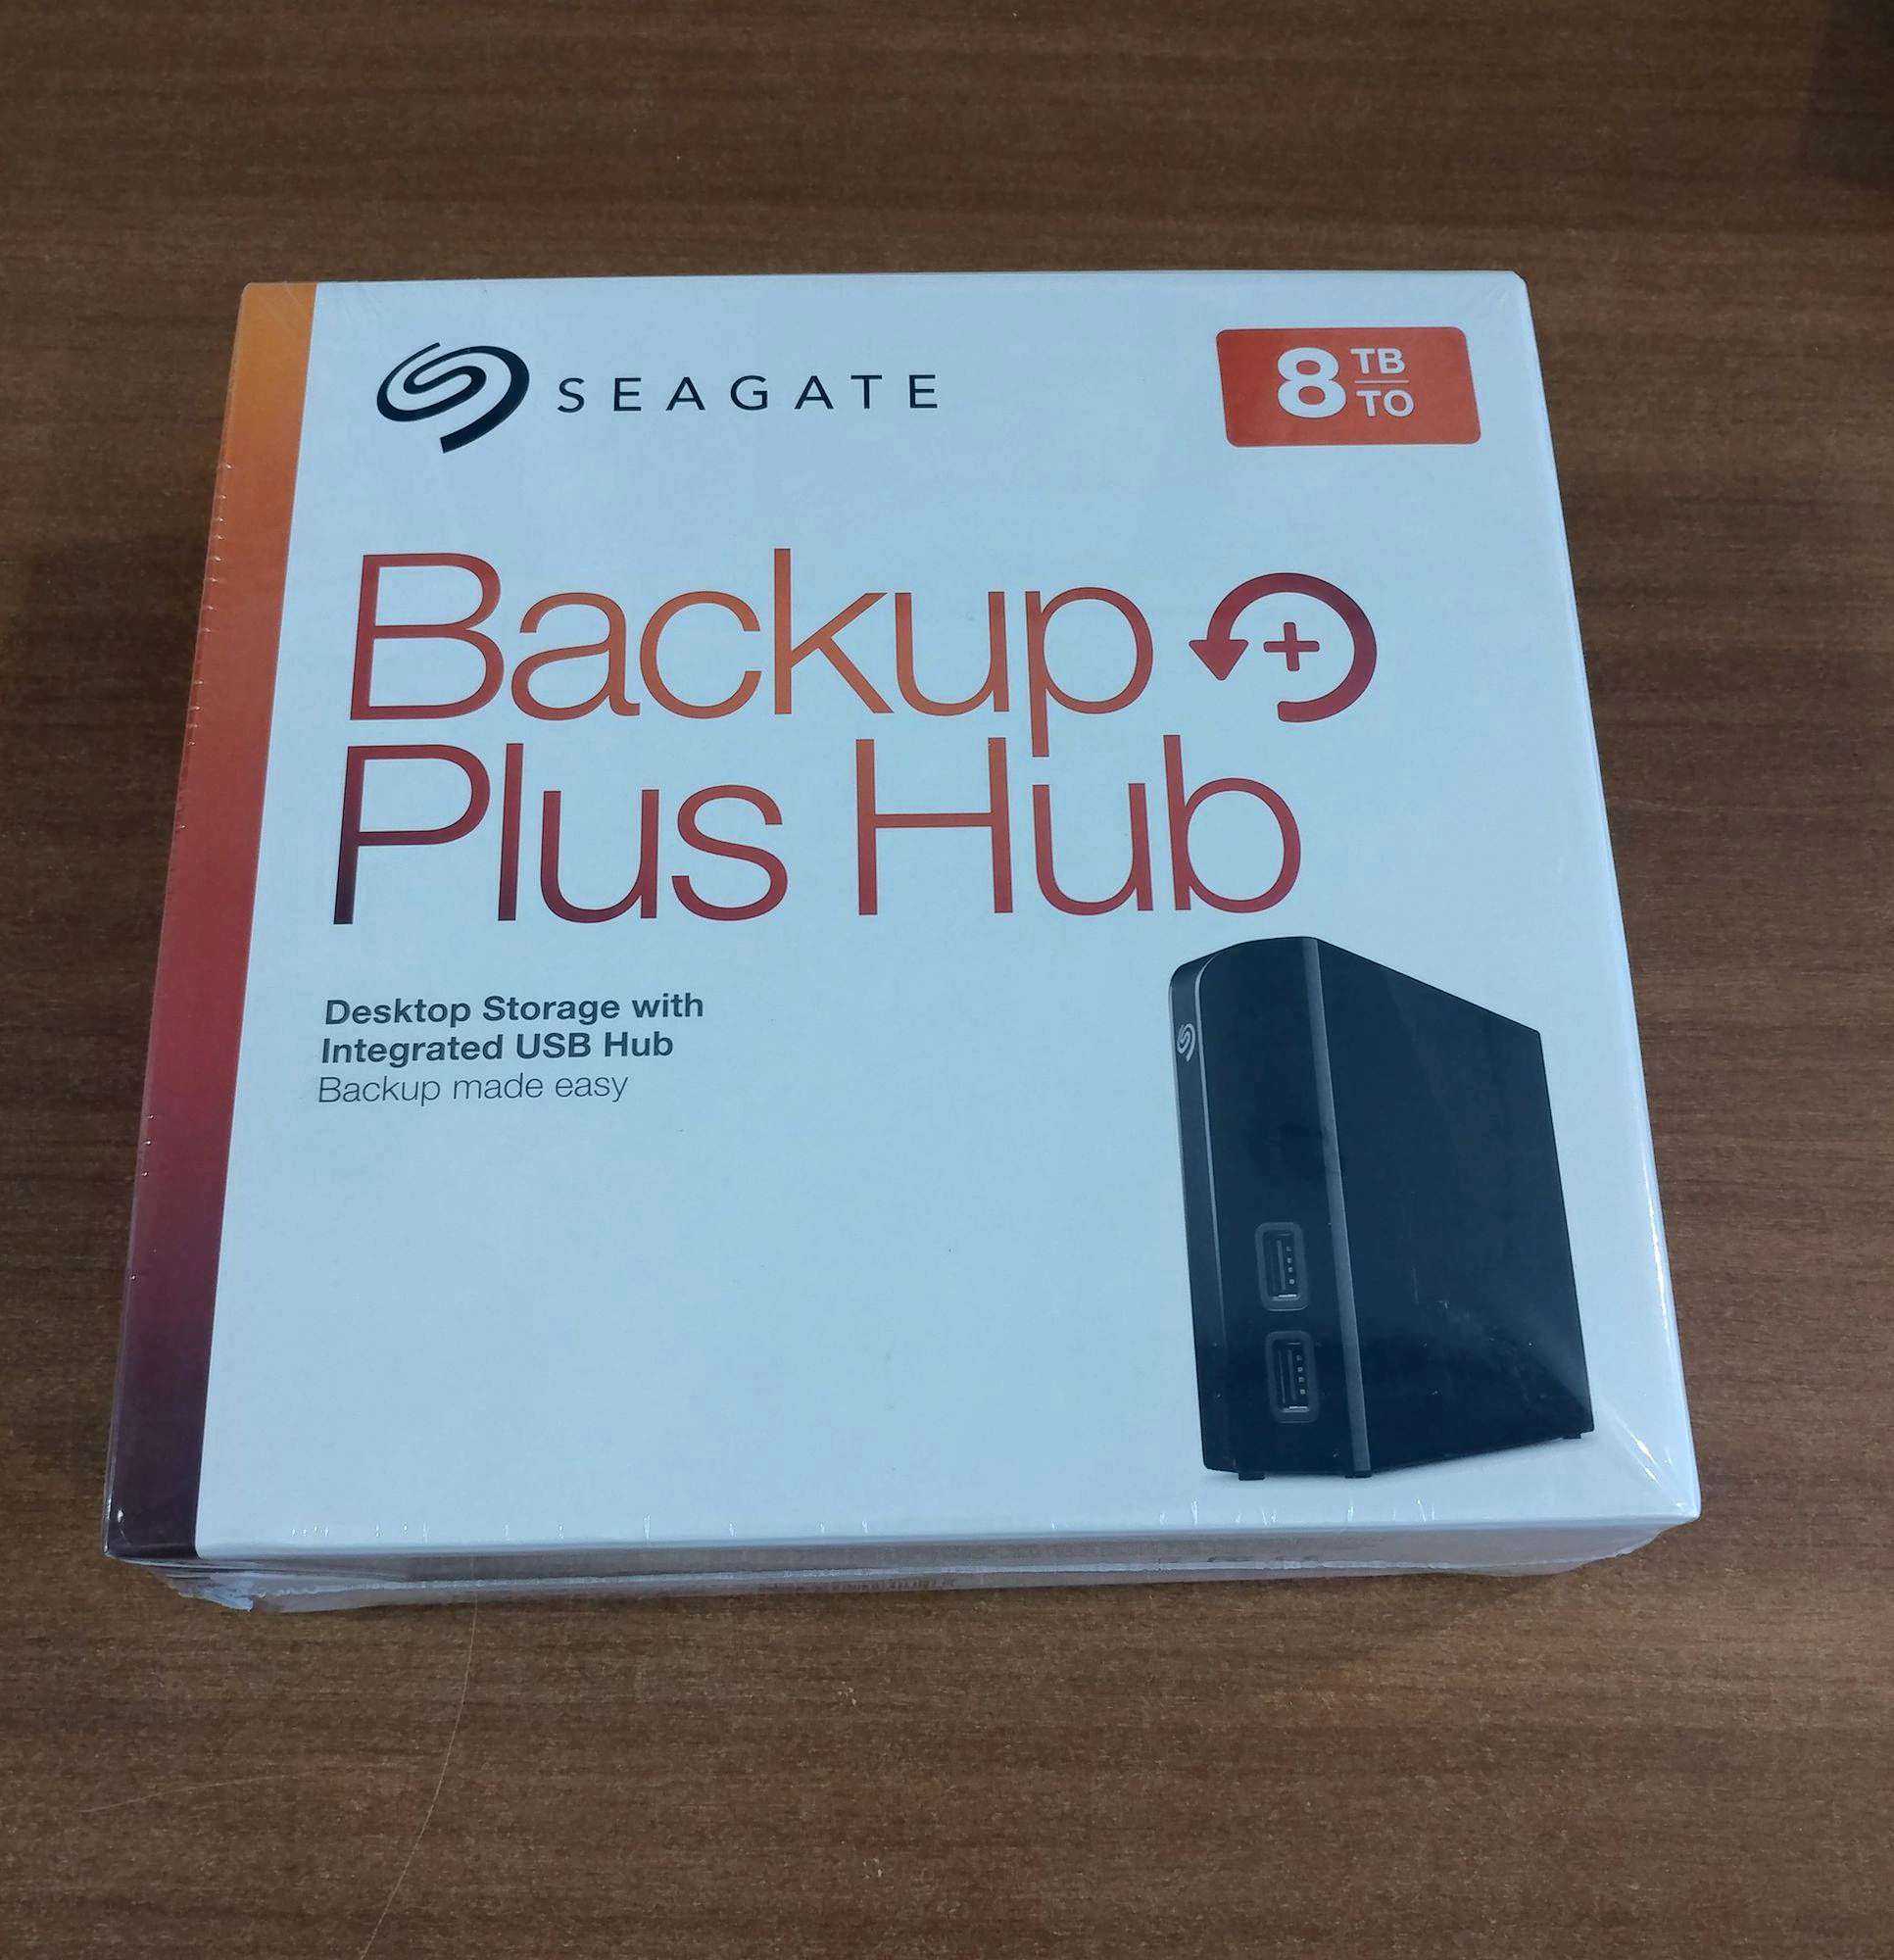 Seagate Backup Plus Hub STEL4000200 - короткий но максимально информативный обзор Для большего удобства добавлены характеристики отзывы и видео